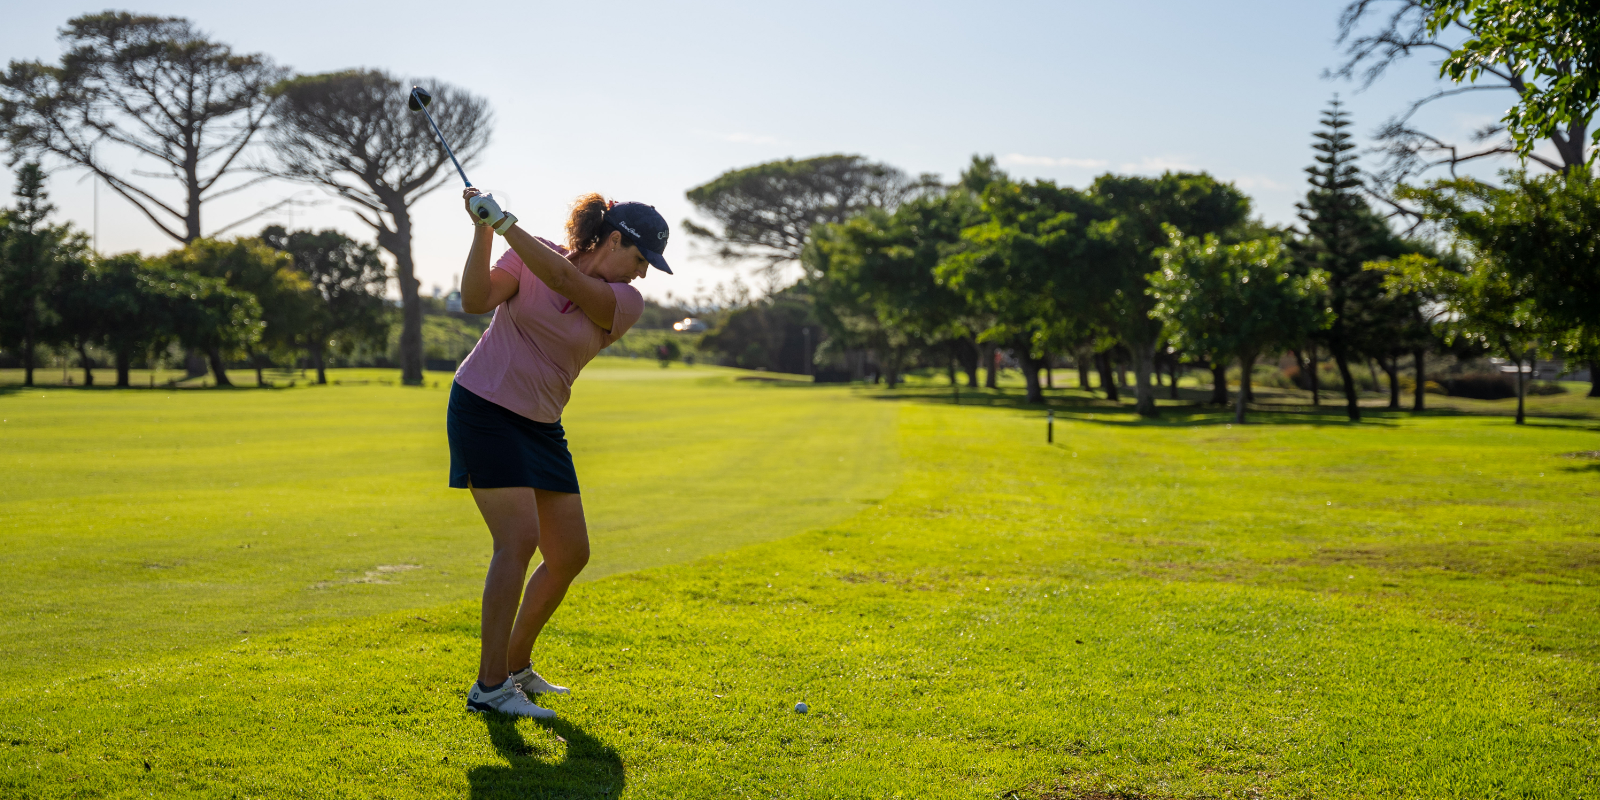 Kraft beim Golf: Mit Muskeln zu gezielten Abschlägen